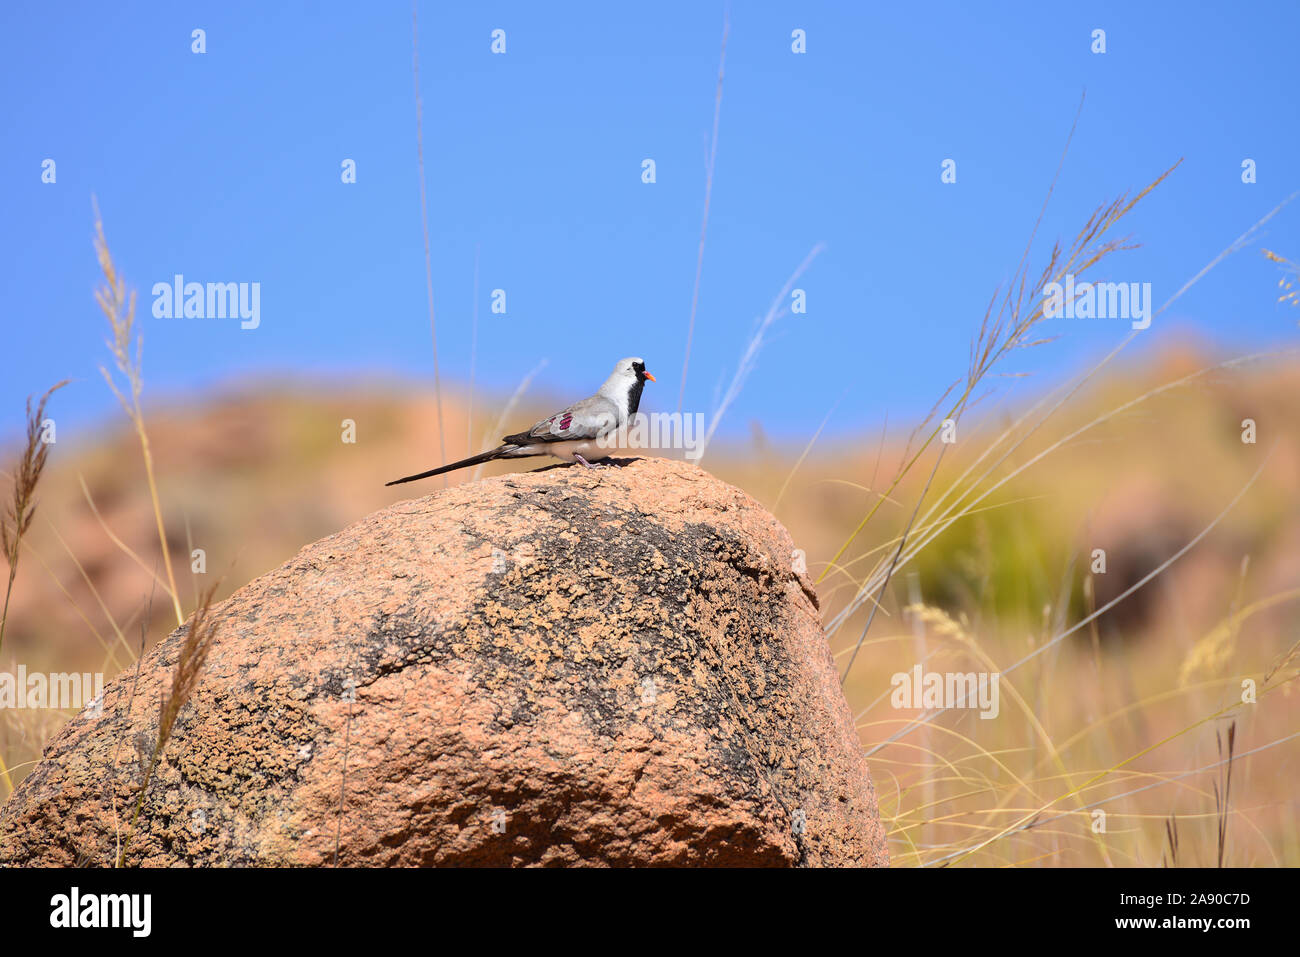 Namaqua dove (Oena mâle capensis) O. c. aliena perché sur un rocher contre le ciel bleu. Banque D'Images